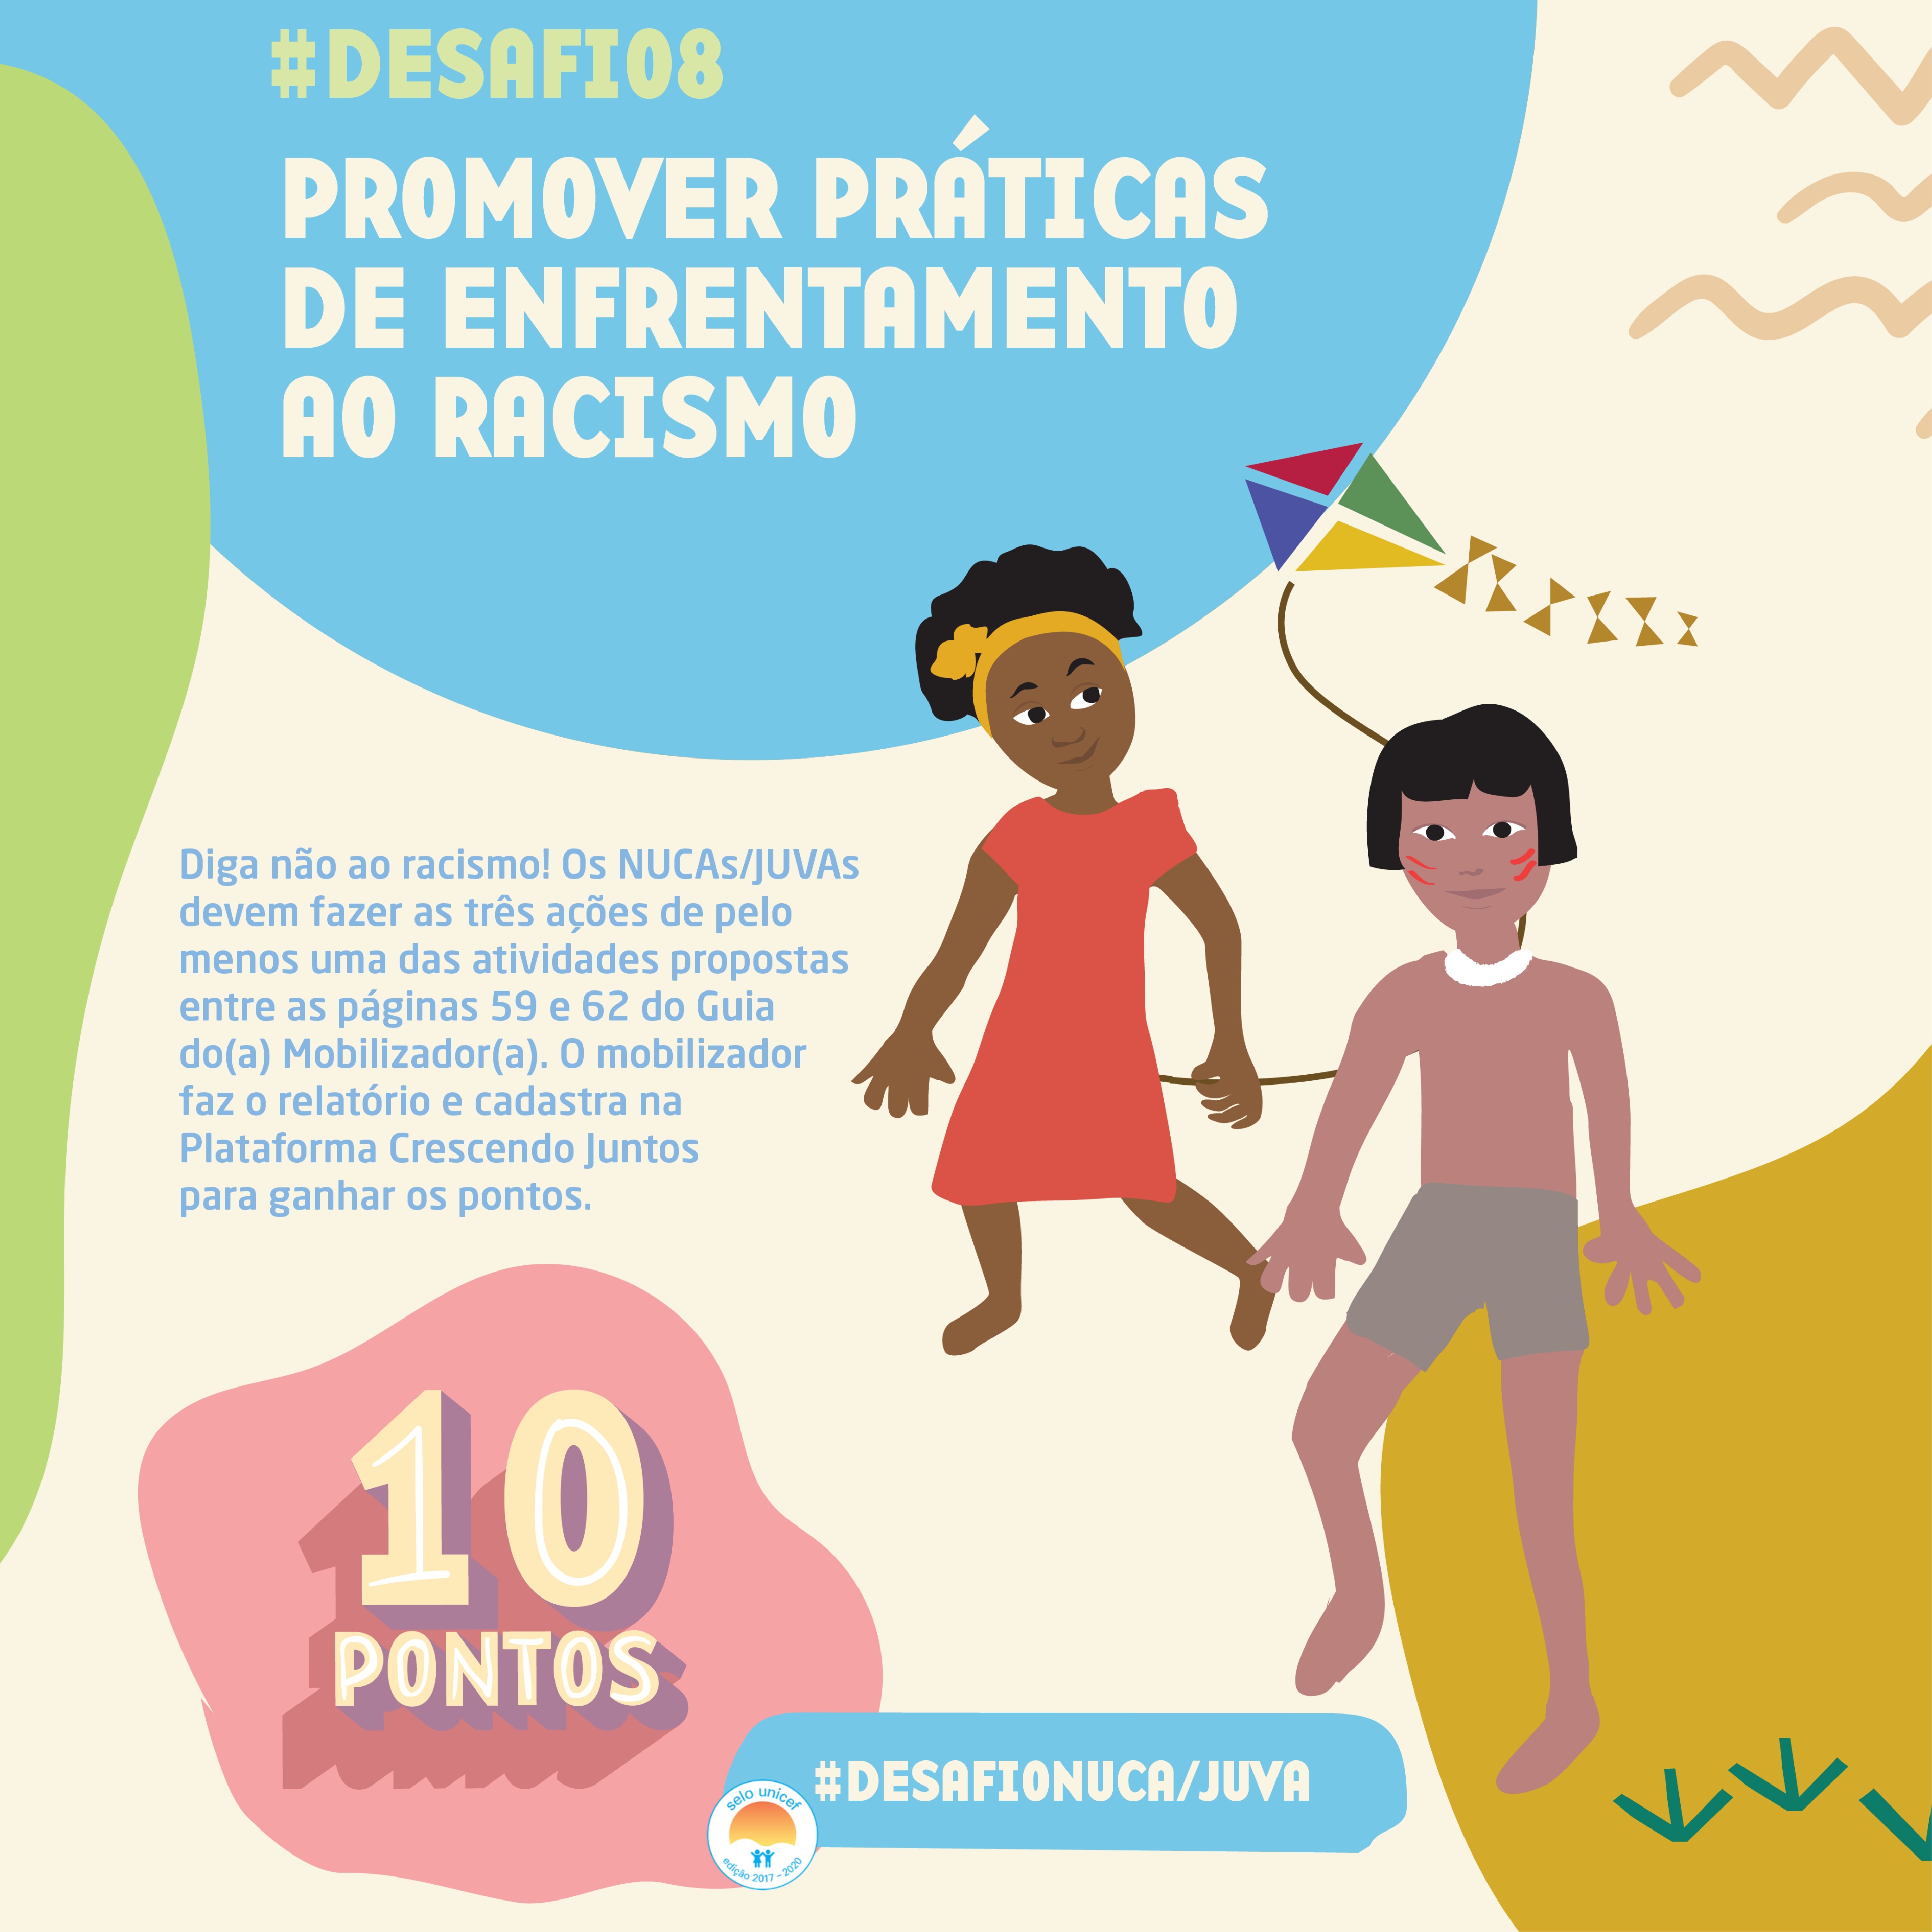 Desafio 8: Promover o enfrentamento ao racismo